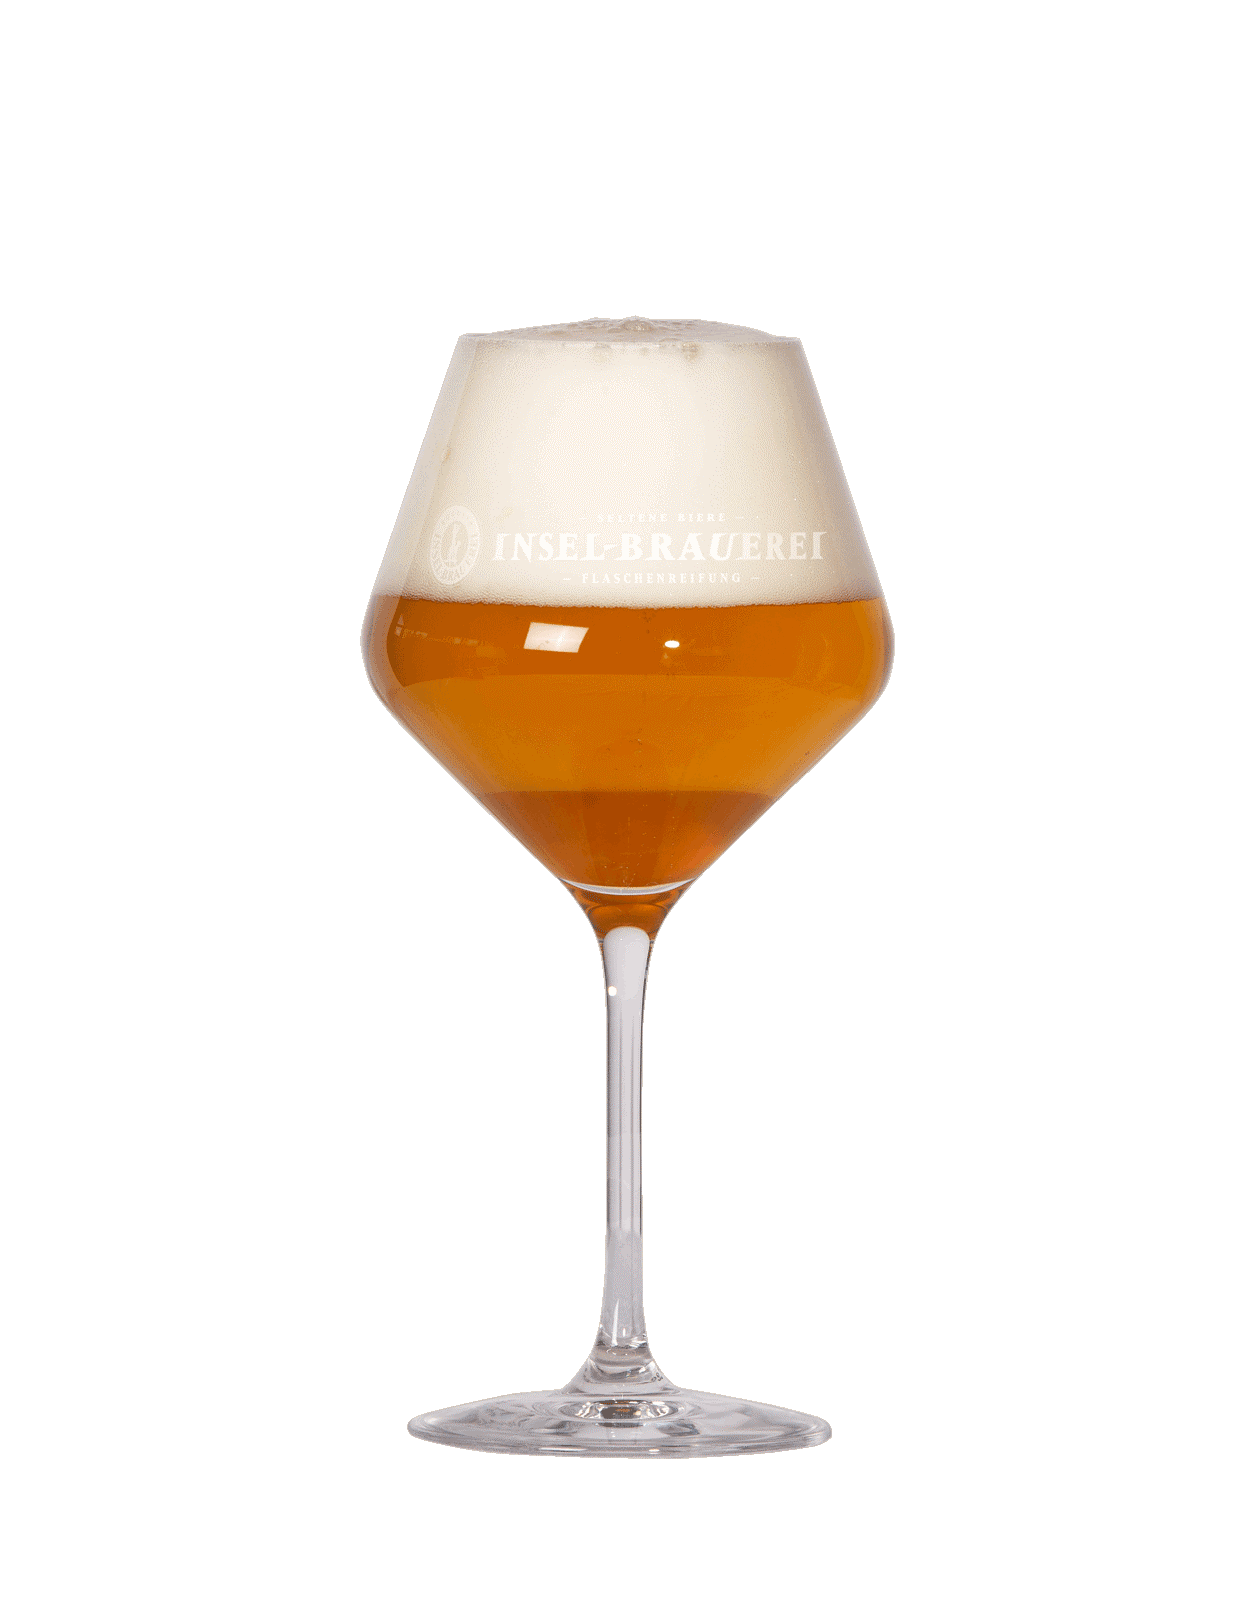 6 x Gourmet Glass - Logo Insel-Brauerei